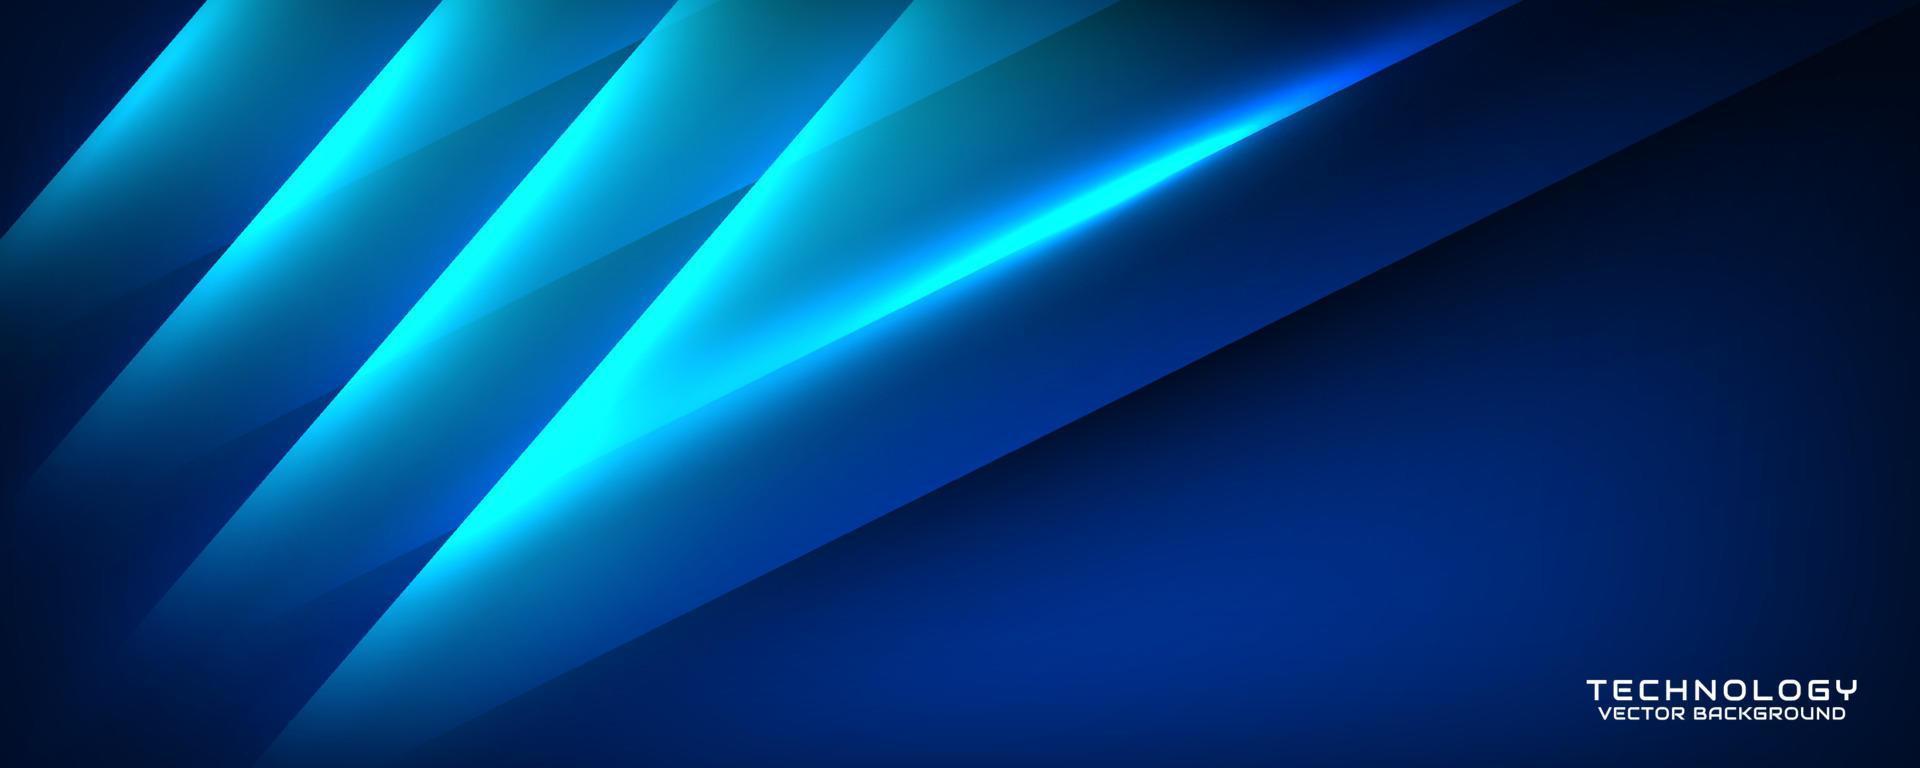 3d blå techno abstrakt bakgrund överlappning lager på mörk Plats med ljus linje effekt dekoration. modern grafisk design element Skära ut stil begrepp för baner, flygblad, kort, eller broschyr omslag vektor